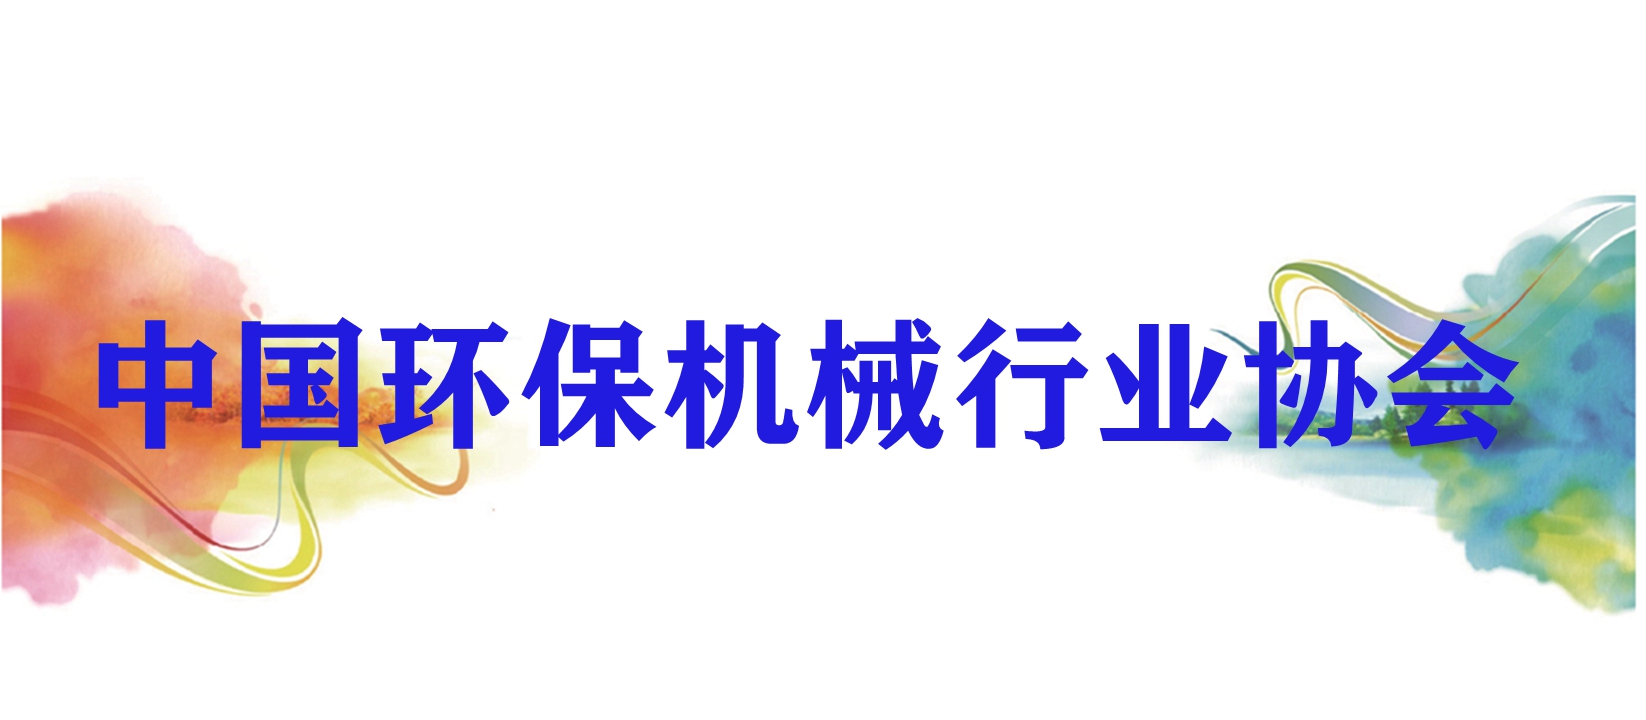 中国环保机械行业协会